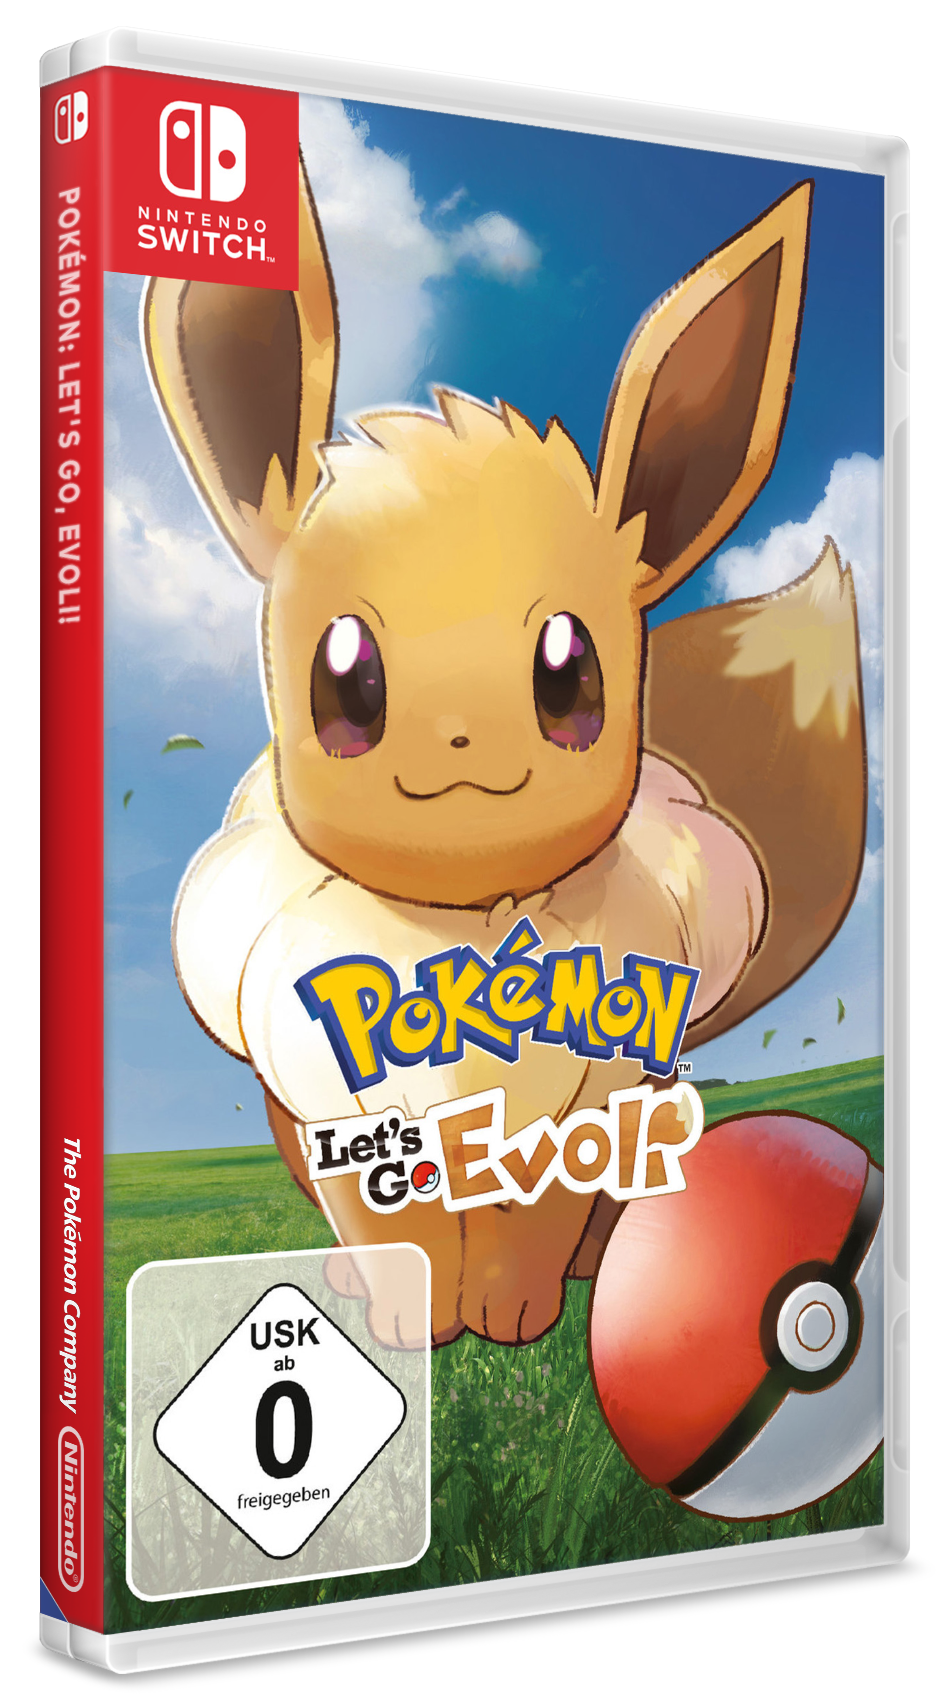 Pokémon Let's Go Eevee/Evoli